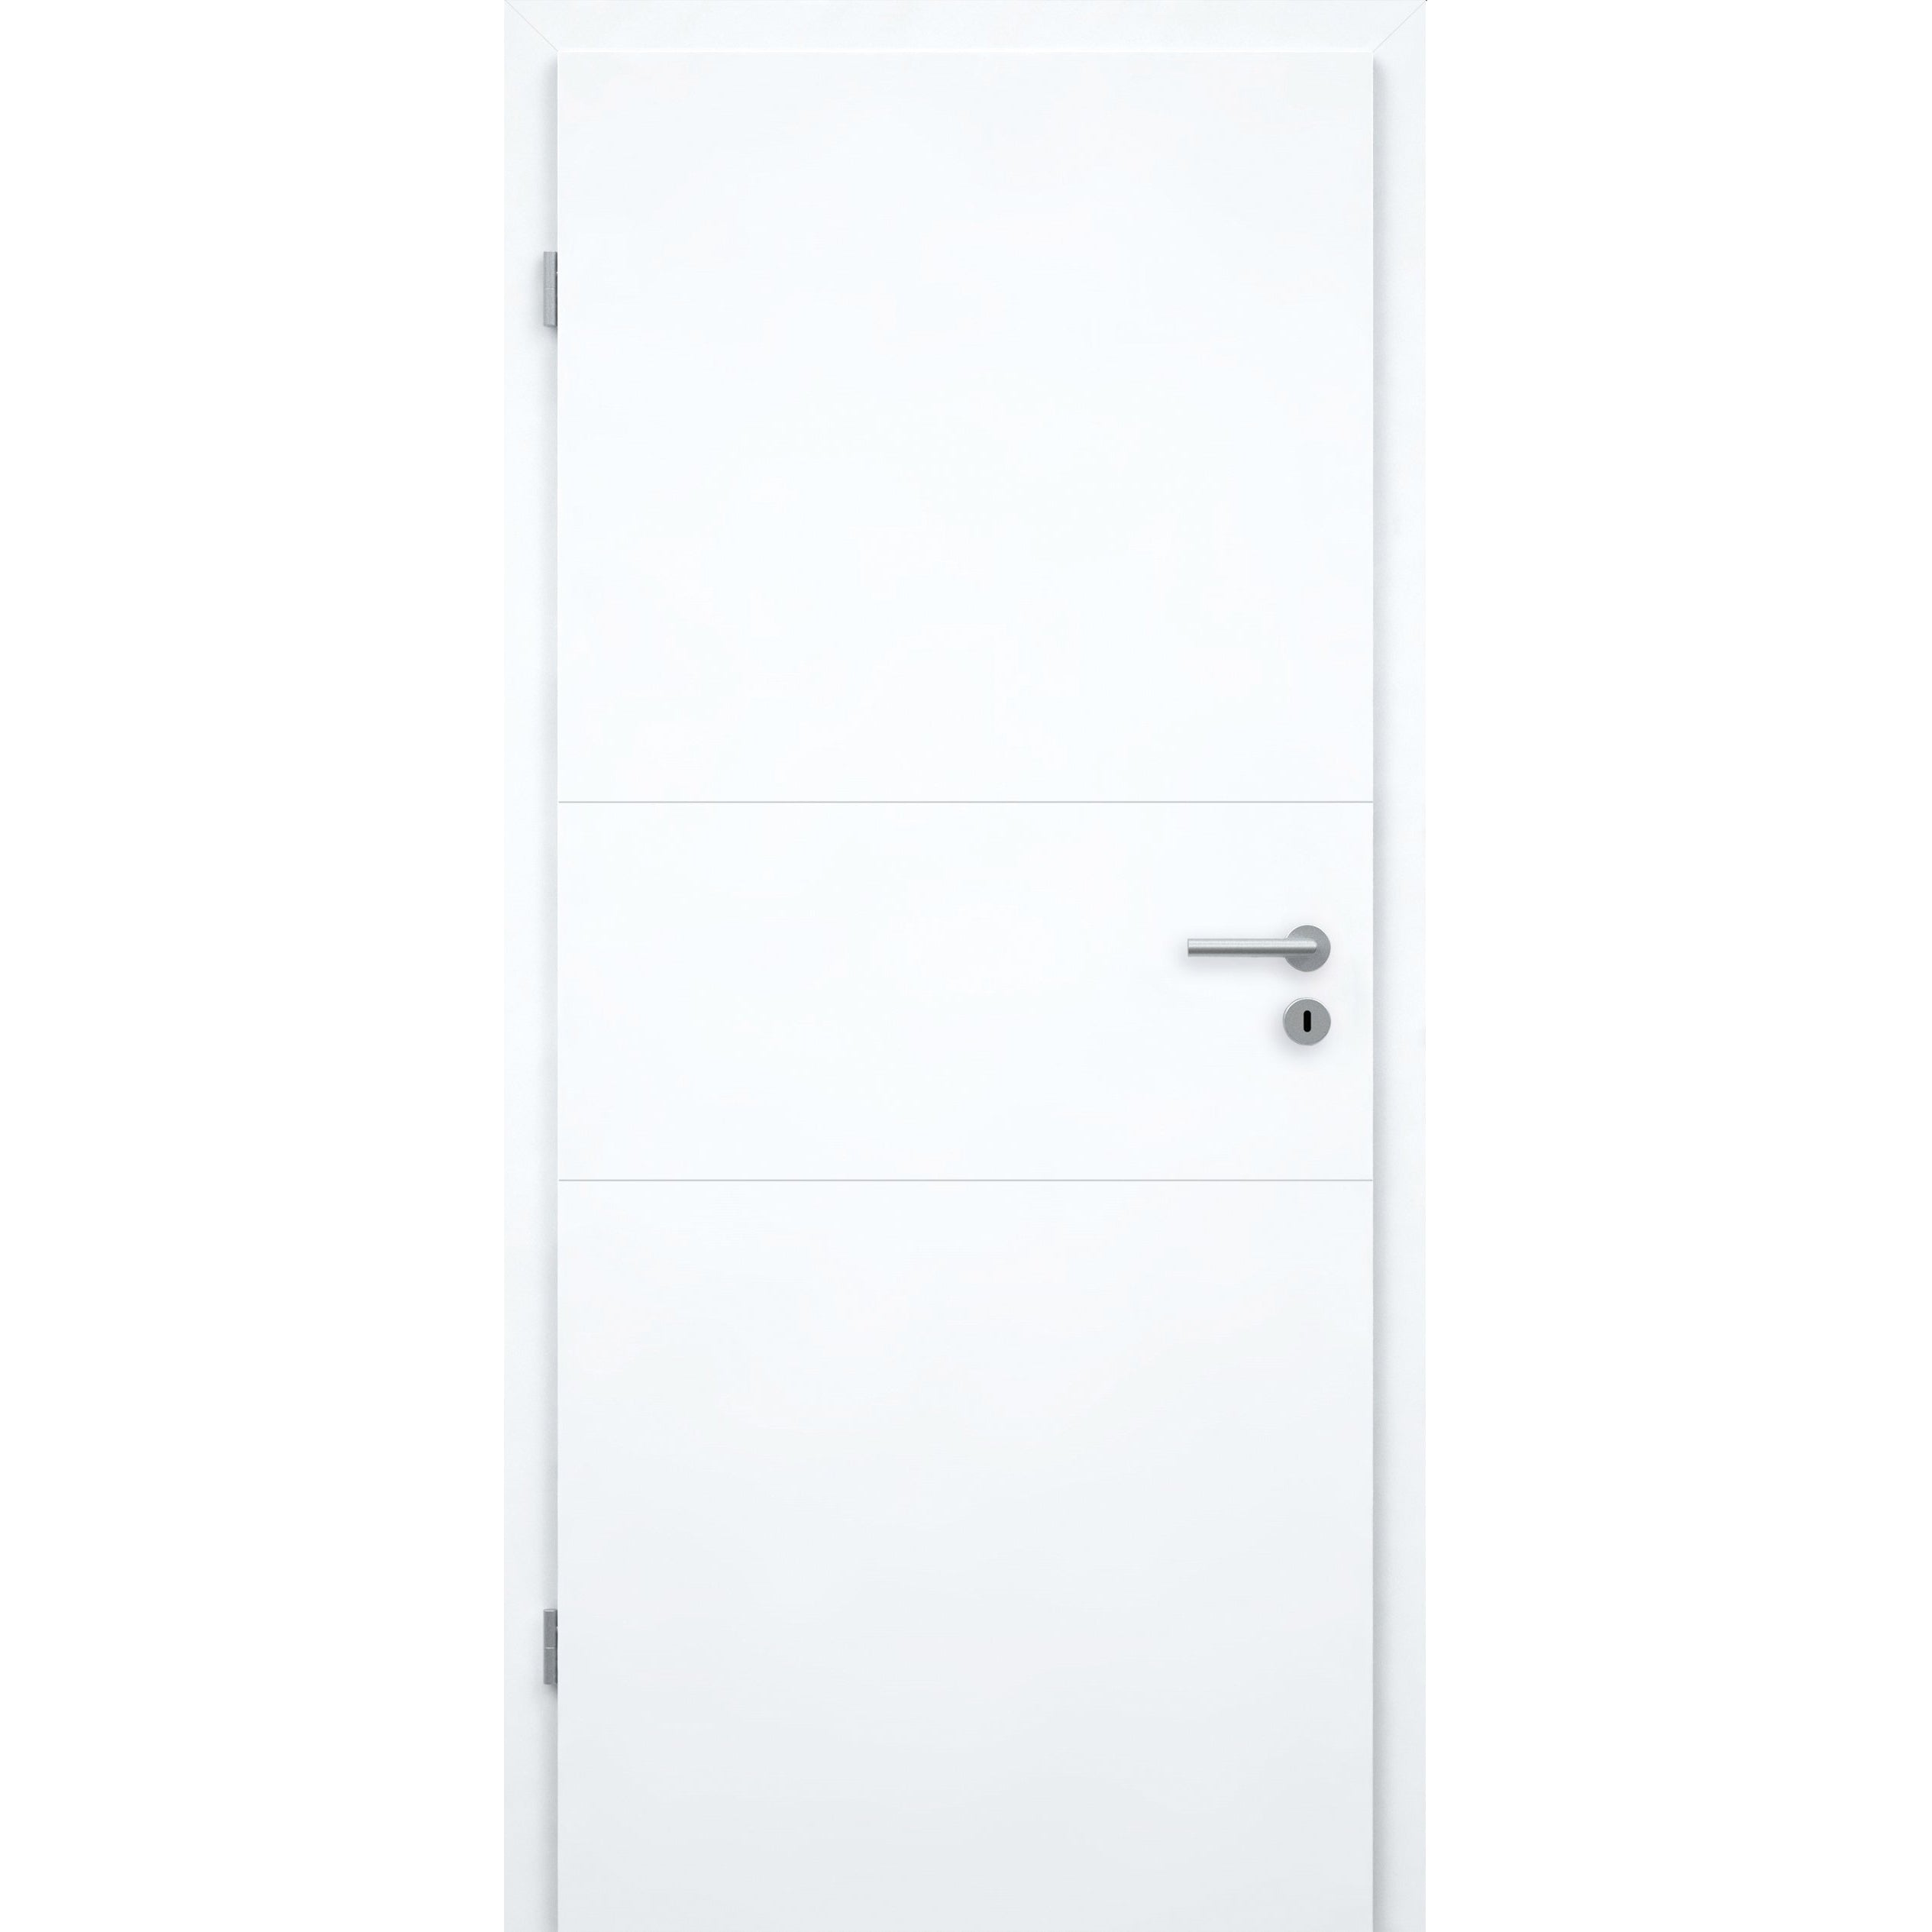 Wohnungseingangstür brillant-weiß 2 Rillen quer Designkante SK2 / KK3 - Modell Designtür Q23